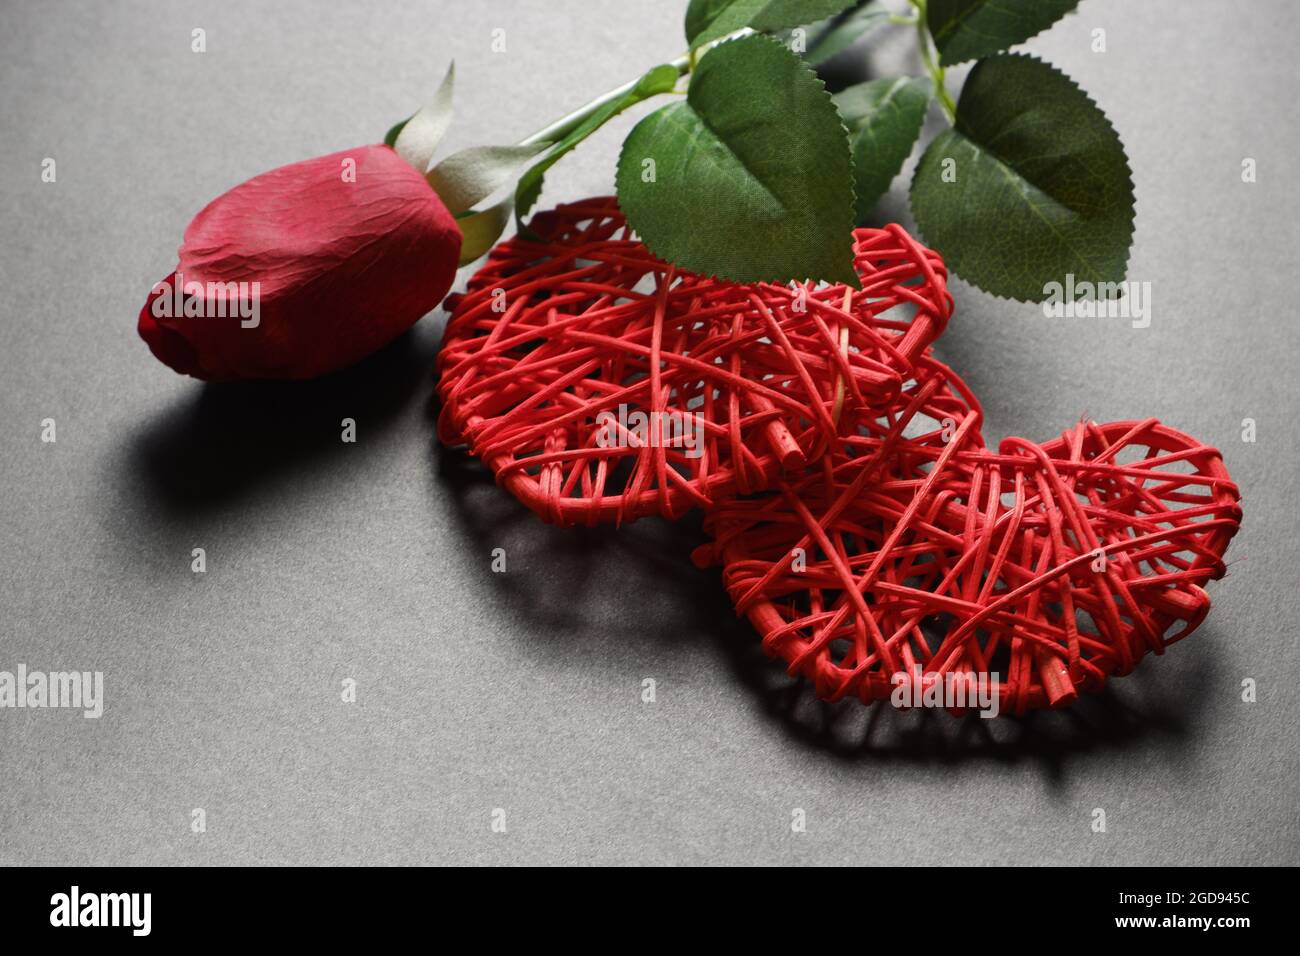 Zwei rote Herzen und eine rote Rose auf dunklem Grund. Stockfoto